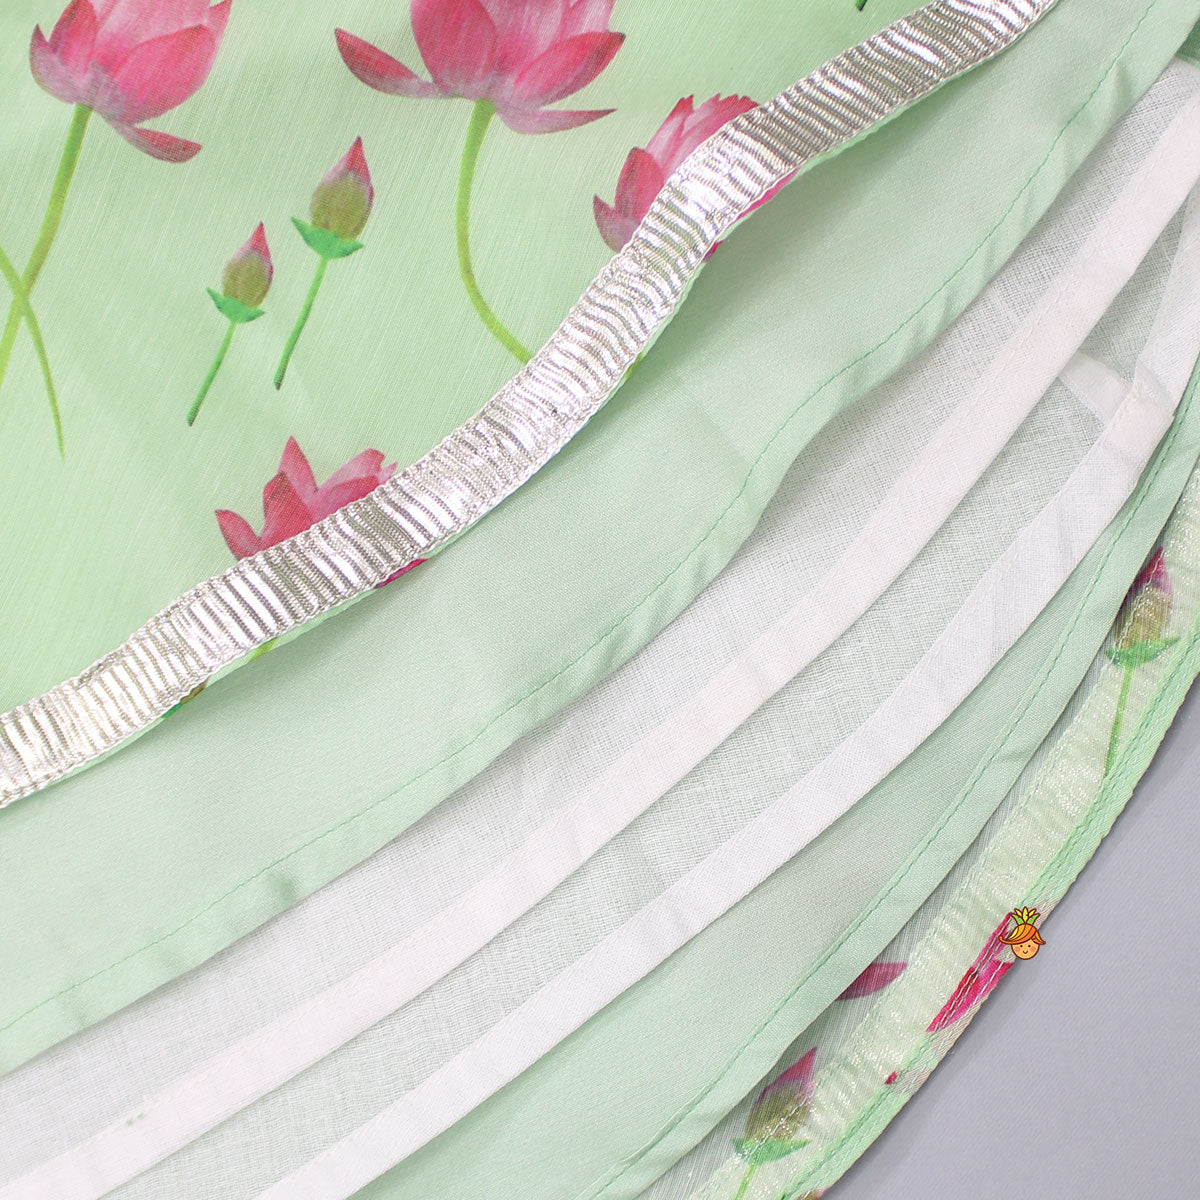 Pink Long Drape Top And Floral Printed Lehenga